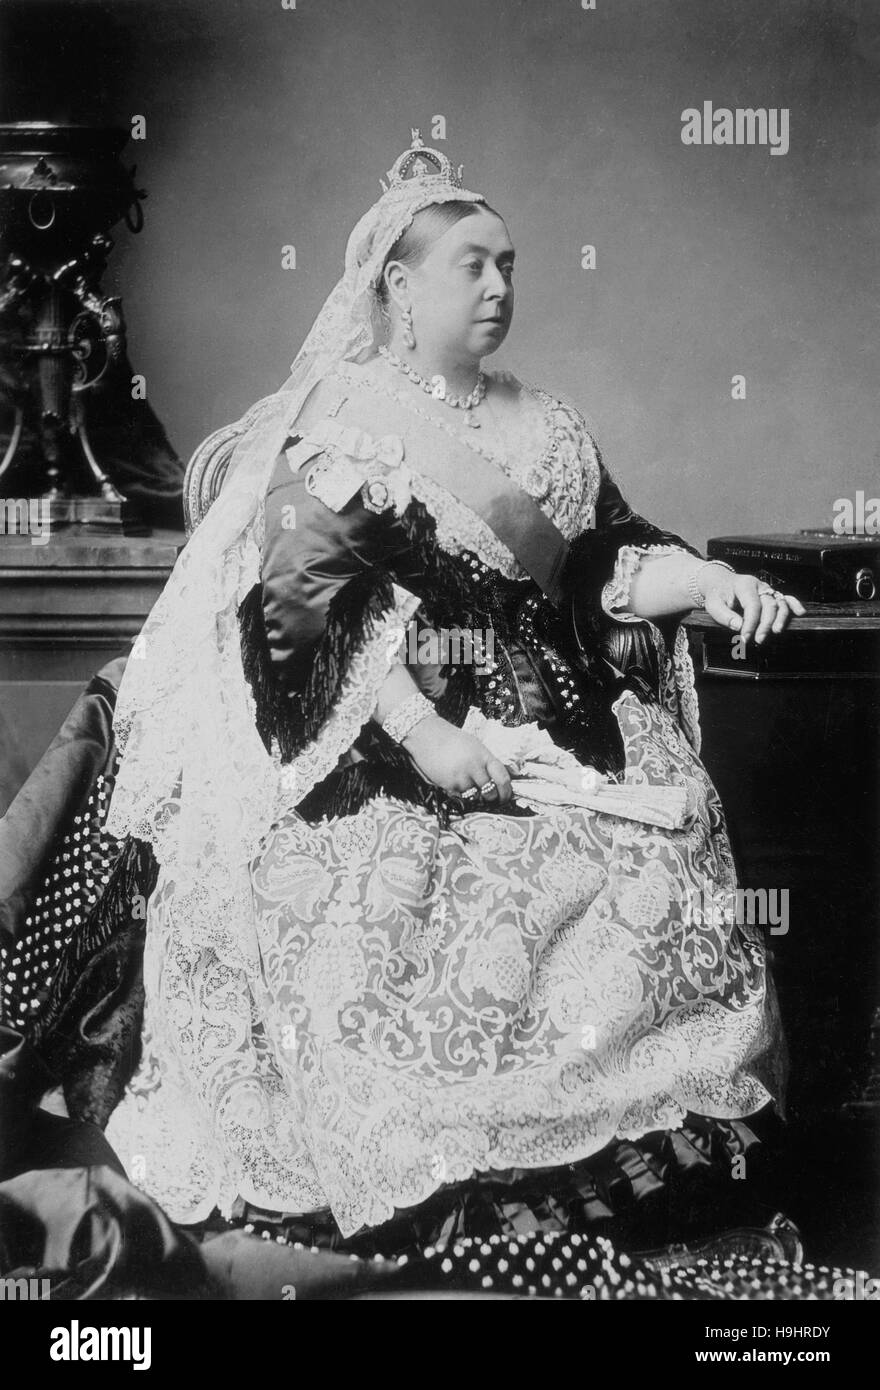 Fotografía , retrato de la Reina Victoria, Reina del Reino Unido de Gran Bretaña e Irlanda desde 1837 hasta su muerte. 1876 Foto de stock